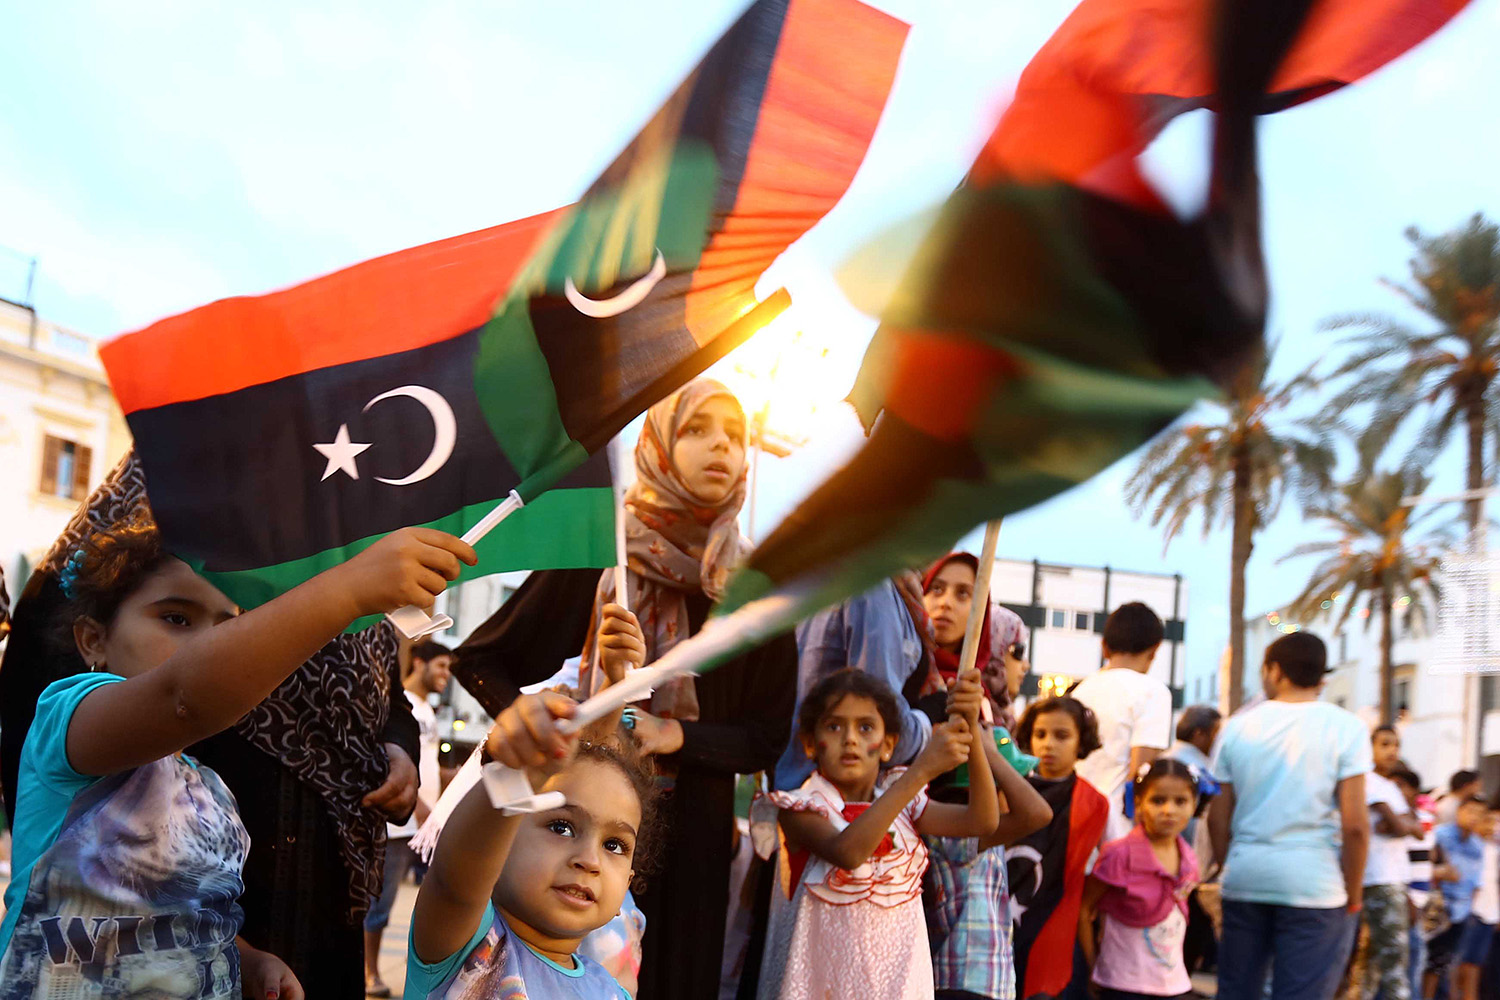 Libia: 3 años sin Gadafi y con miedo a balcanización